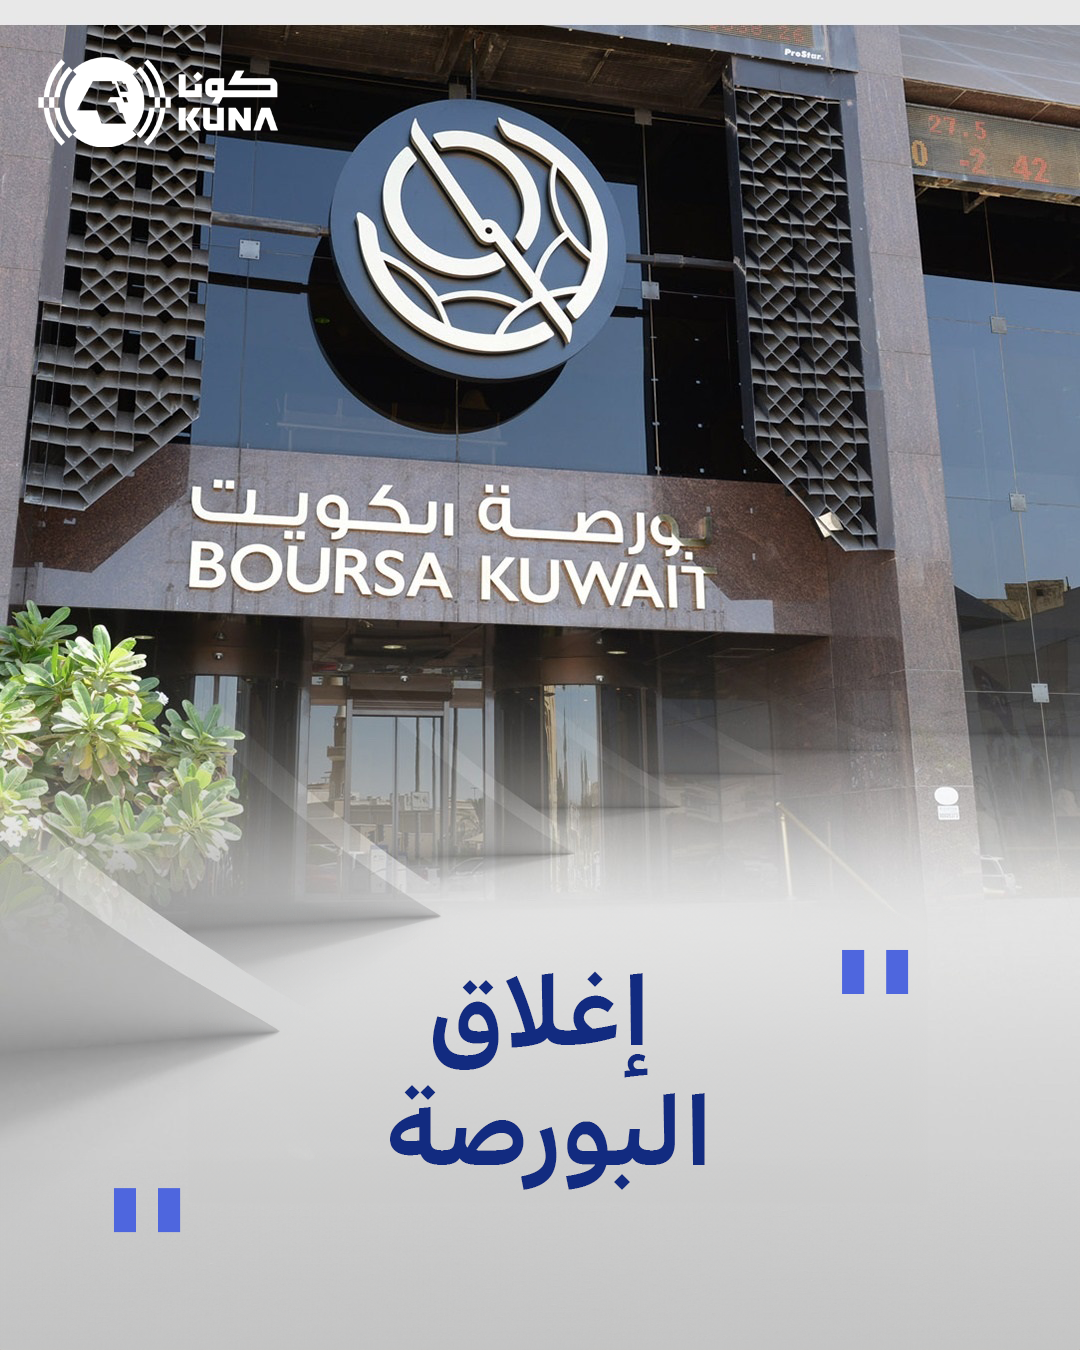 بورصة الكويت تغلق تعاملاتها على ارتفاع مؤشرها العام 16ر8 نقطة ليبلغ 05ر7051 بنسبة 12ر0 في المئة                                                                                                                                                           